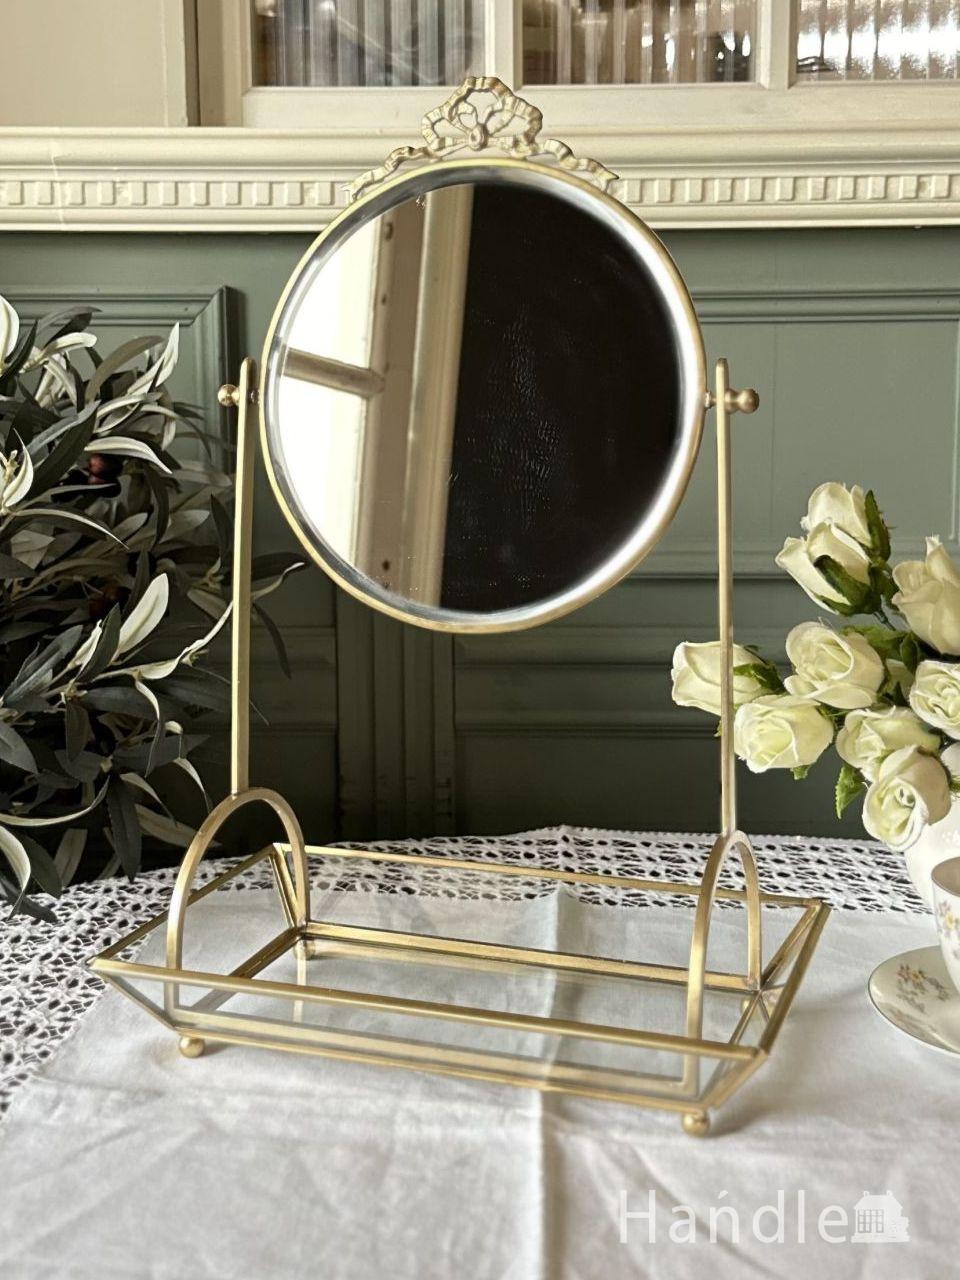 アンティーク調のおしゃれな鏡、リボンとお花の飾りが可愛いウォール 